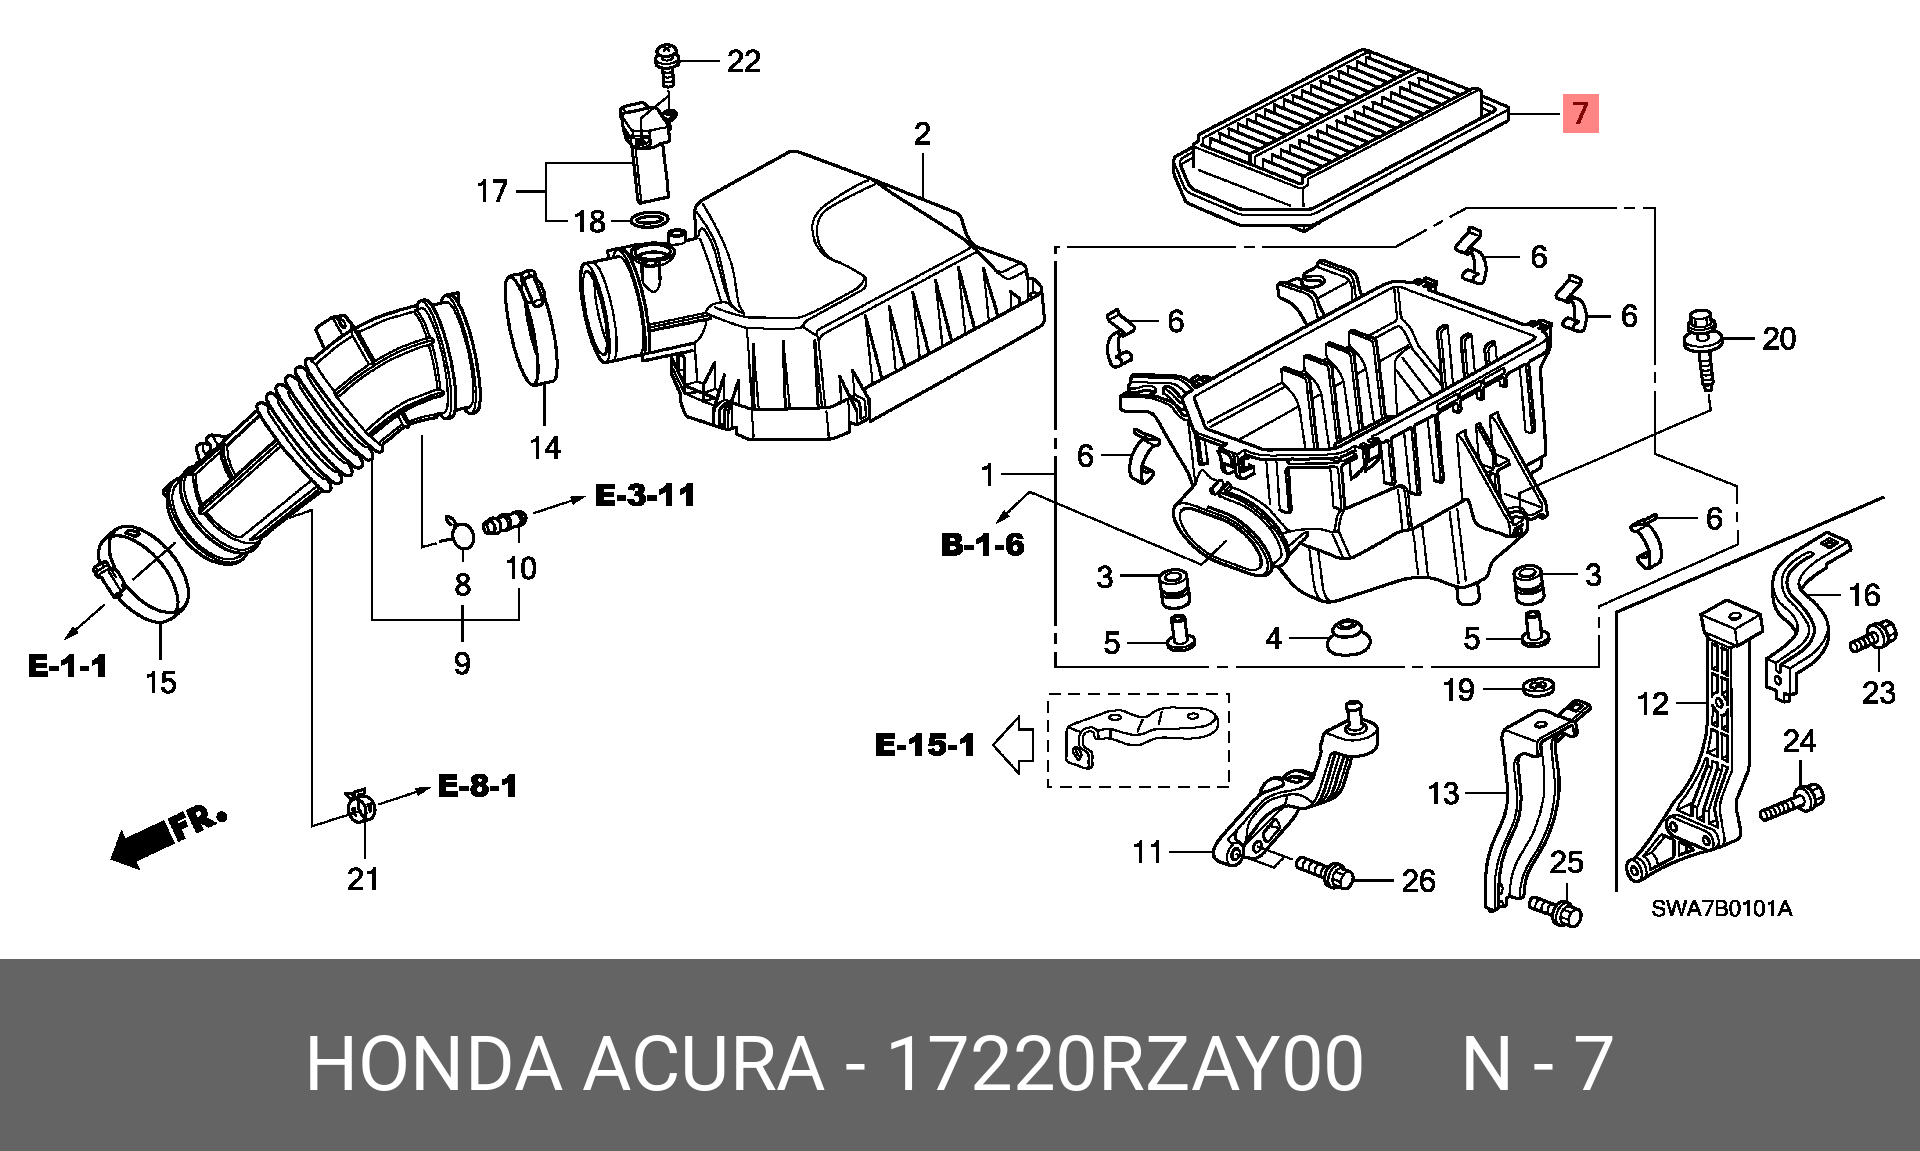 Фильтр воздушный Honda CR-V 3 2.4. Honda CRV фильтр воздушный 2.4. Воздушная система Honda CR V 3. Корпус воздушного фильтра Honda XR 250.